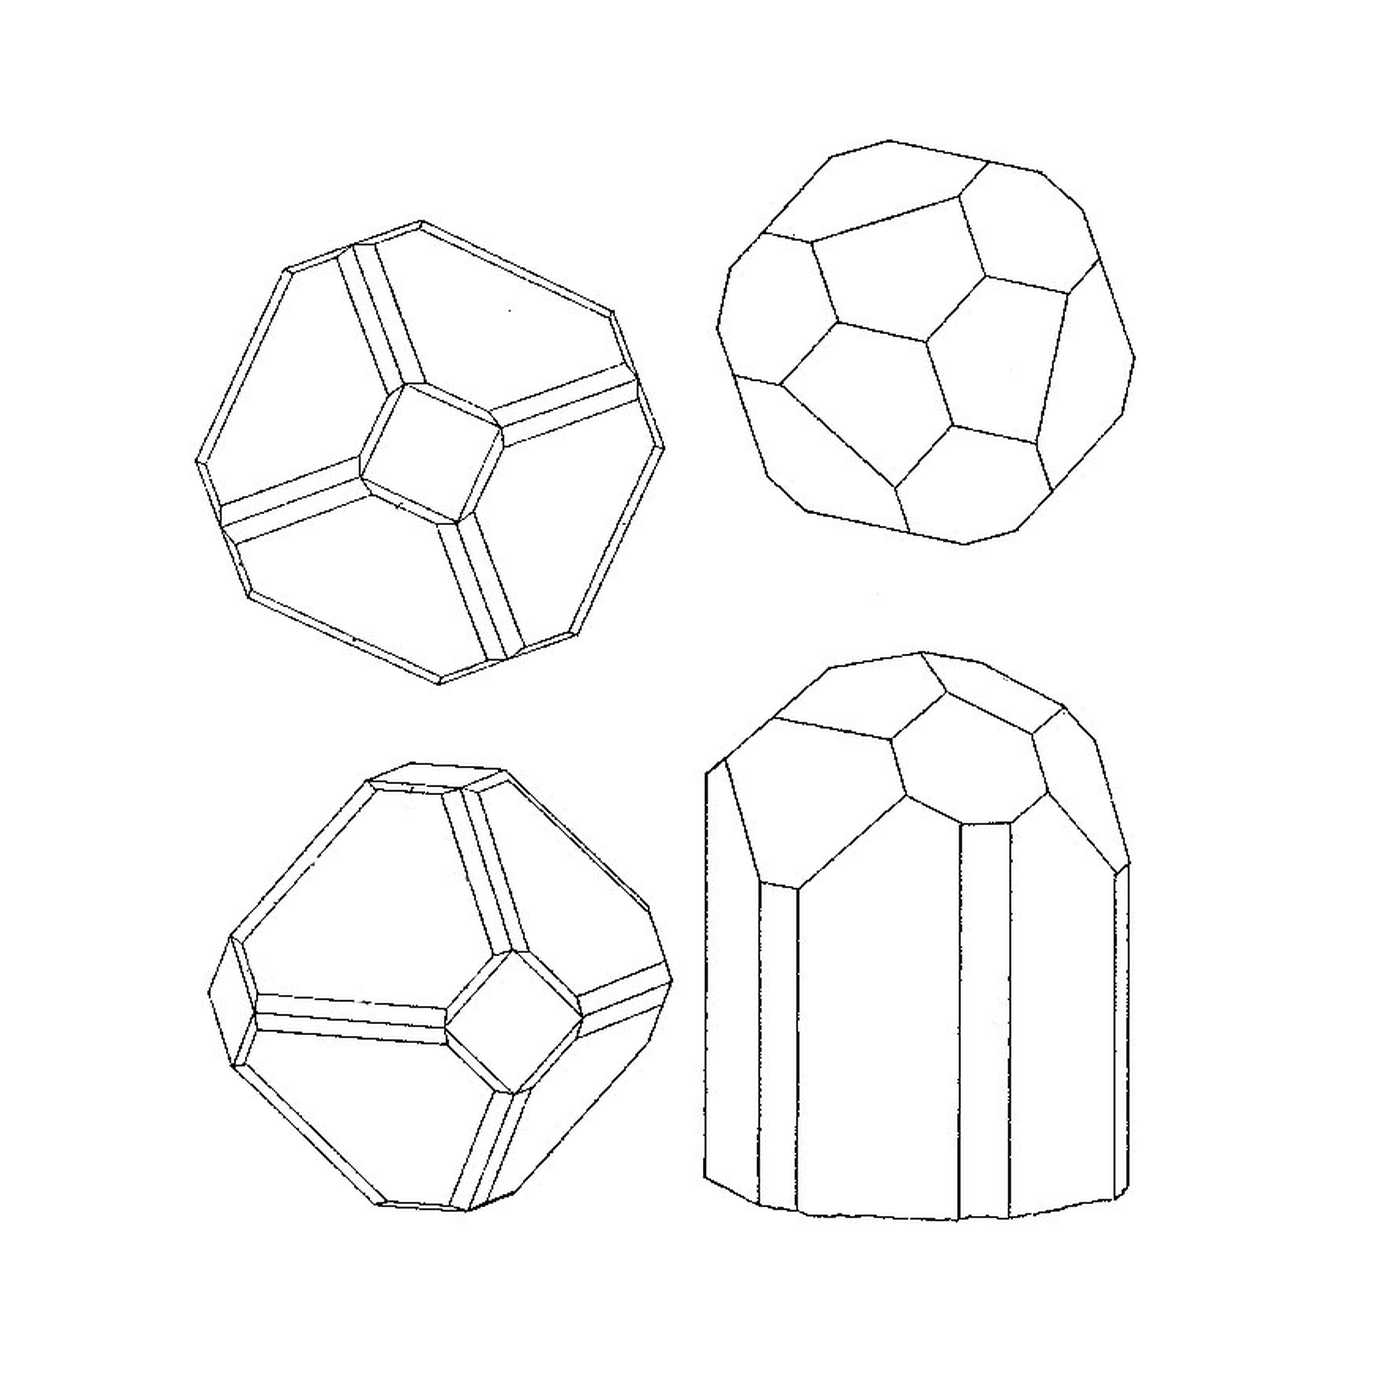   Quatre formes géométriques différentes 